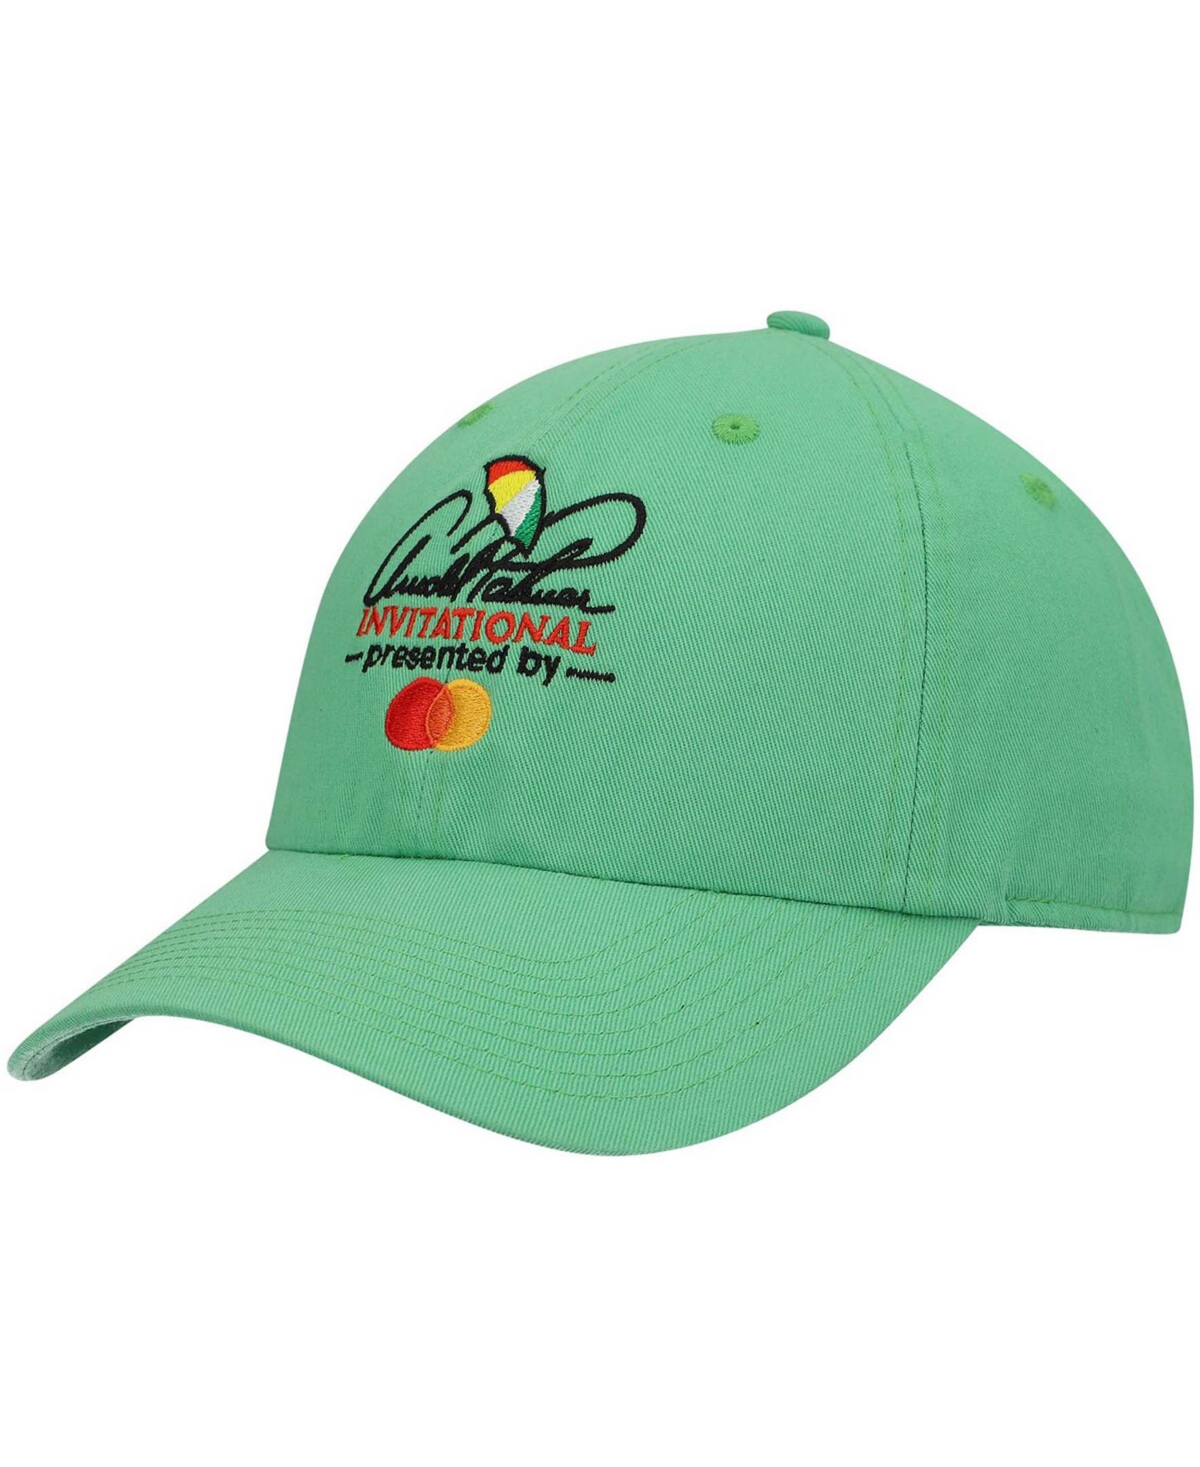 Men's Green Arnold Palmer Invitational Logo Adjustable Hat - Green